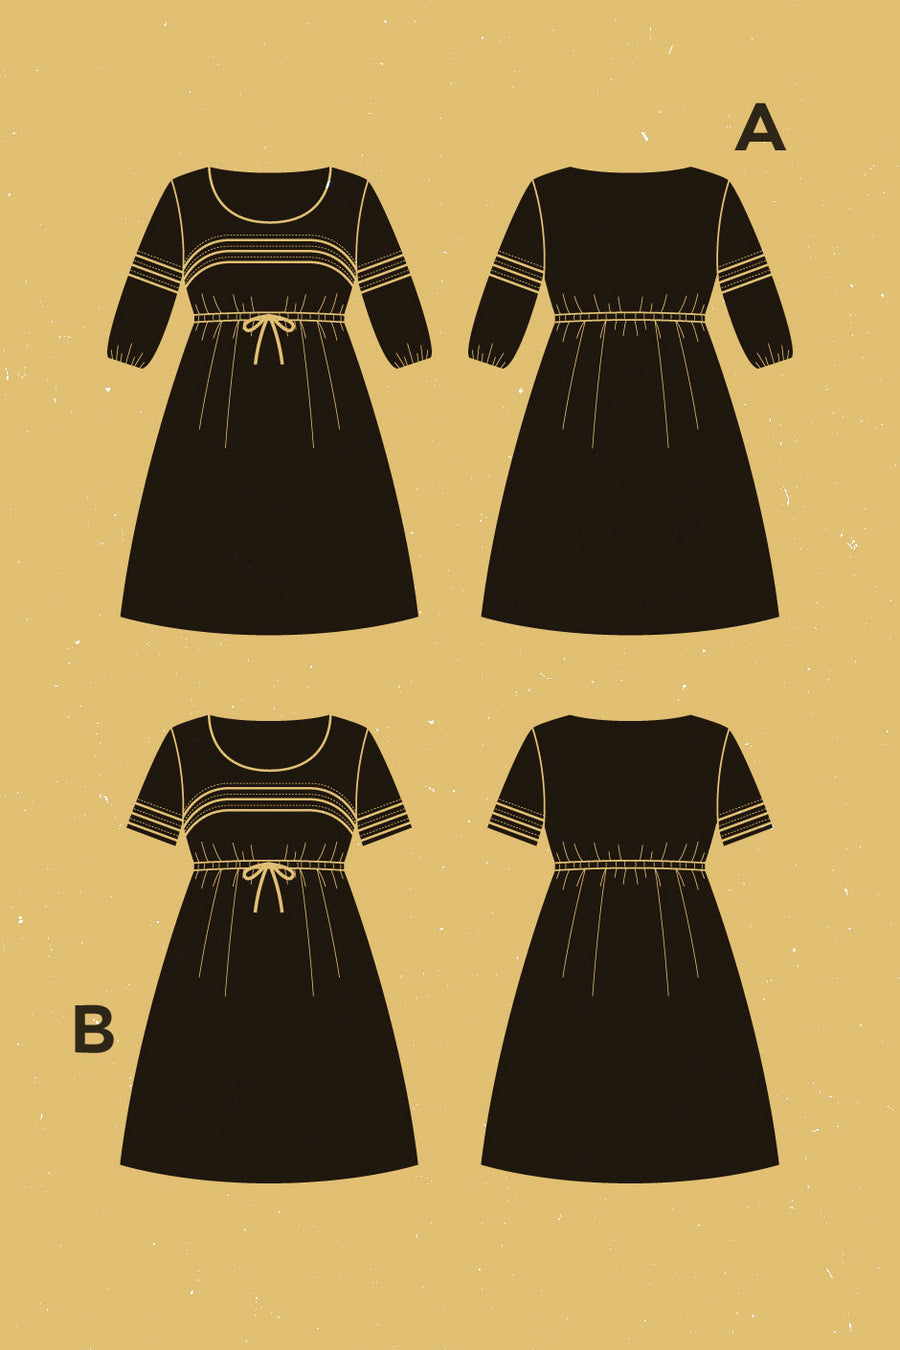 Aubépine Dress Pattern | Patron de Robe Aubépine | Deer & Doe